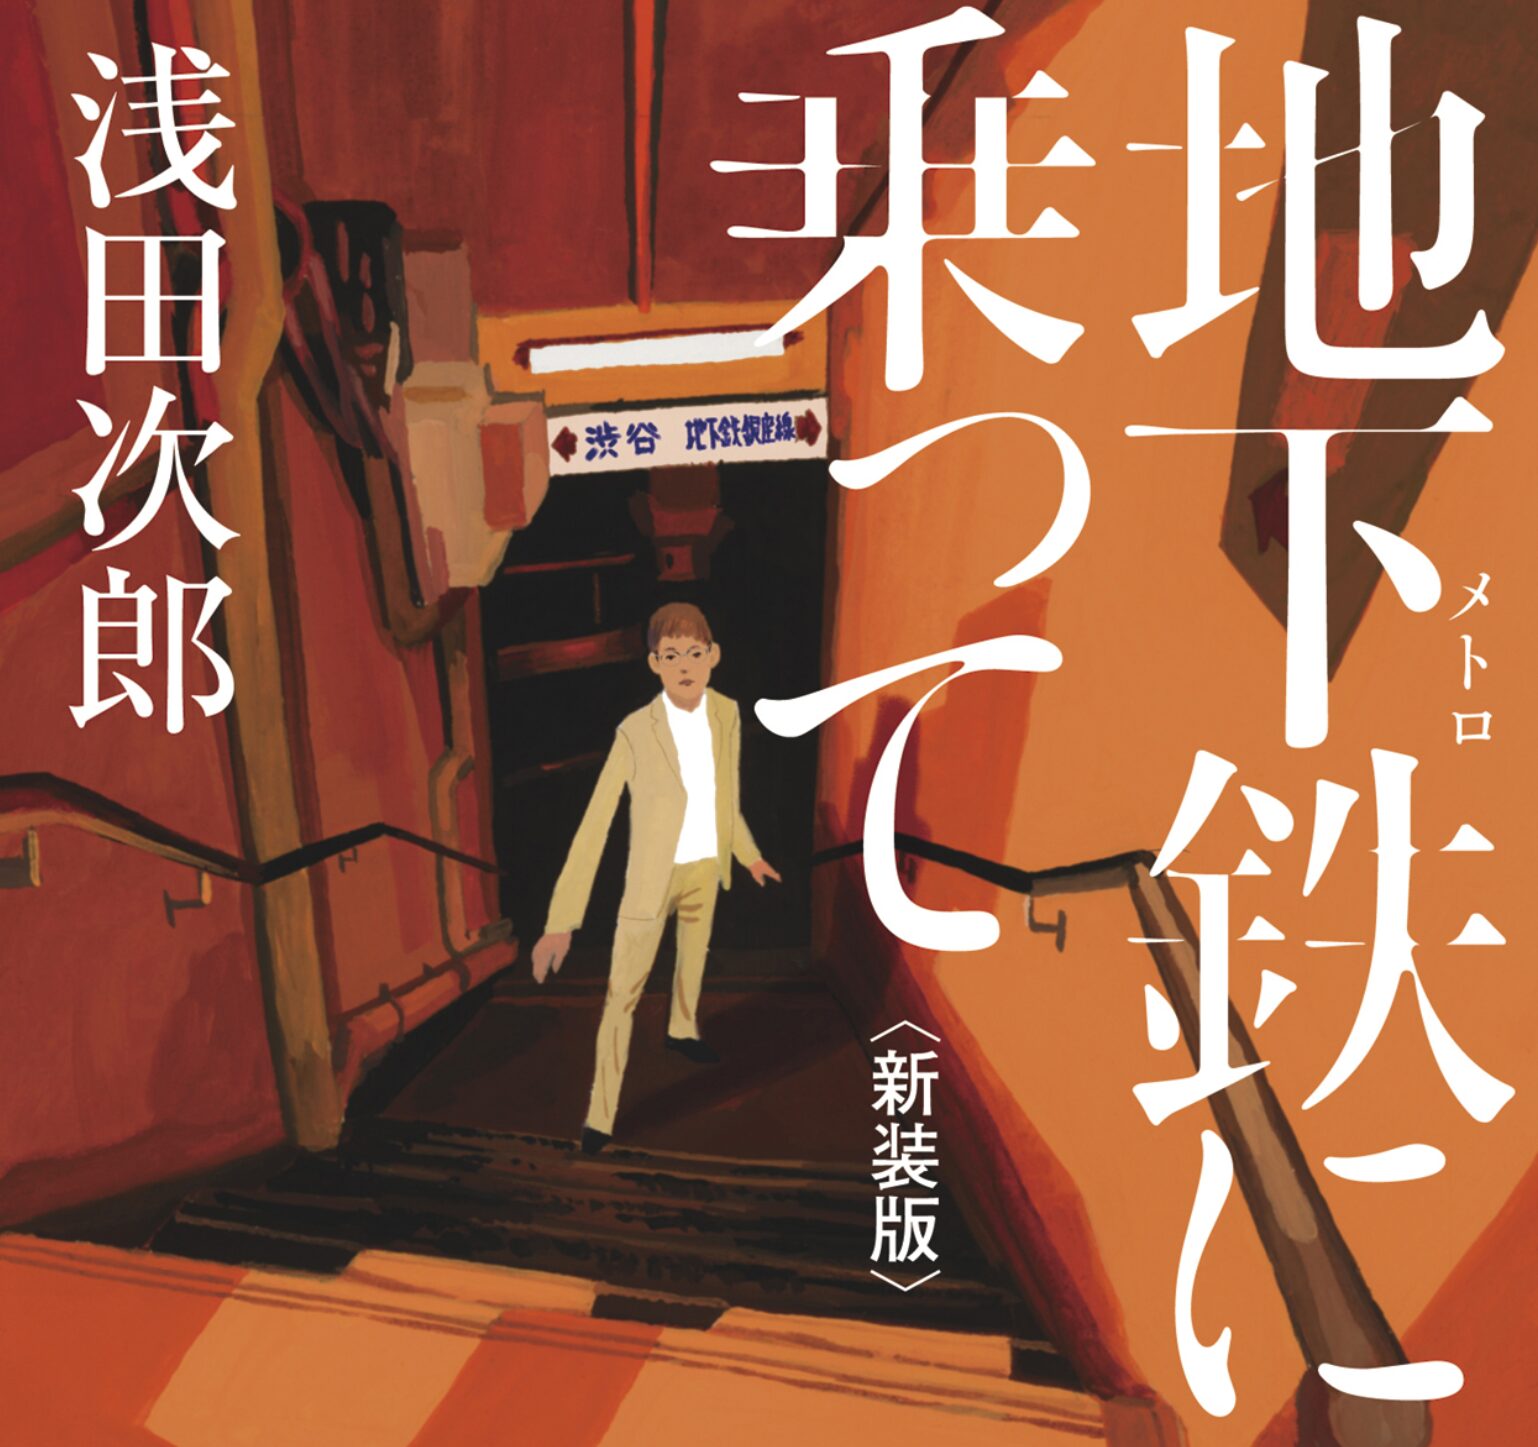 岡本綾さんのはかなげな表情…浅田文学の原点「地下鉄に乗って」